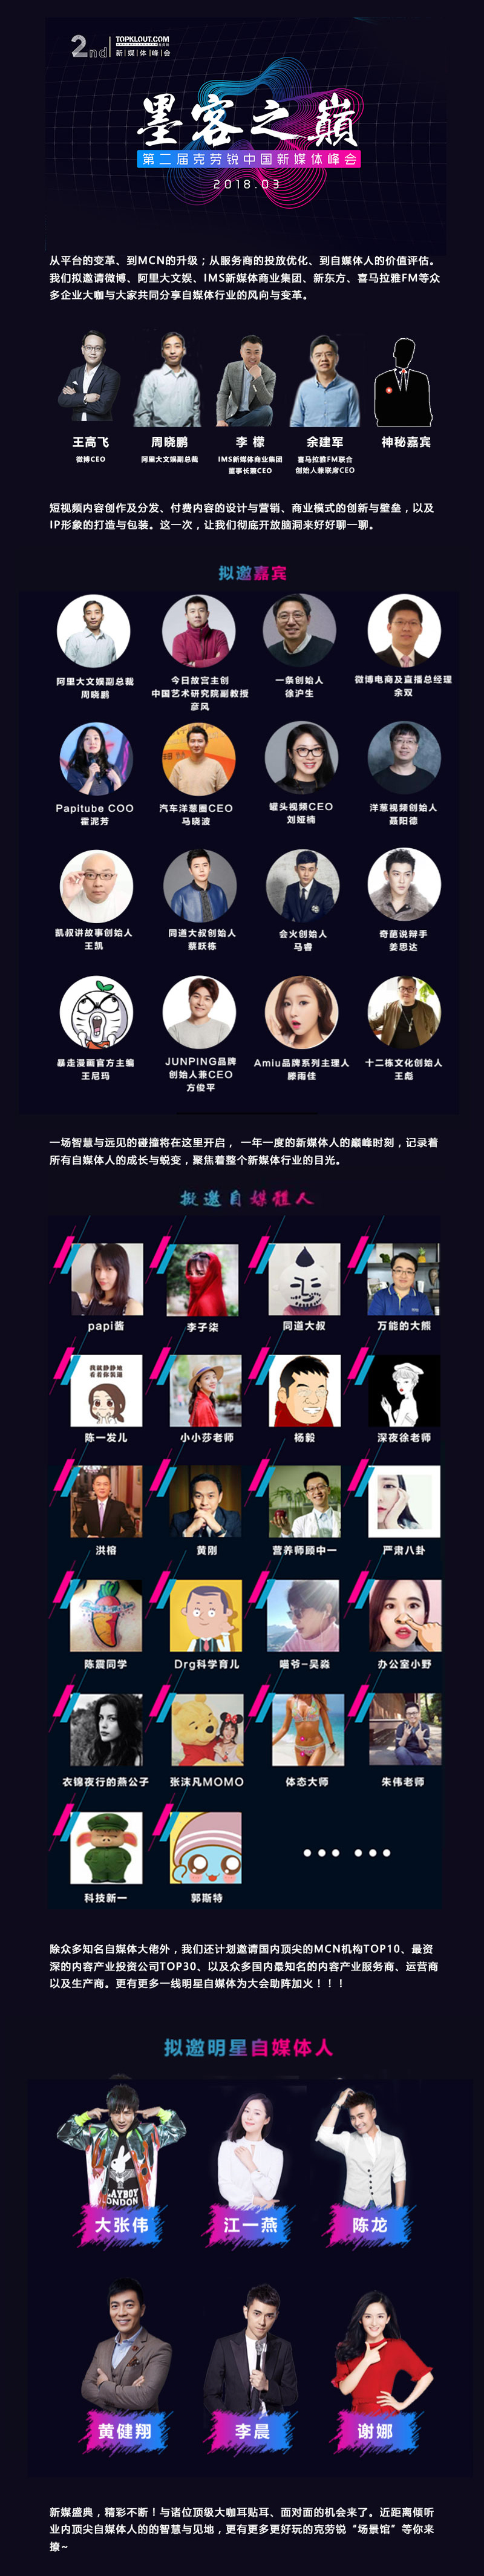 2018克劳锐第二届中国新媒体峰会